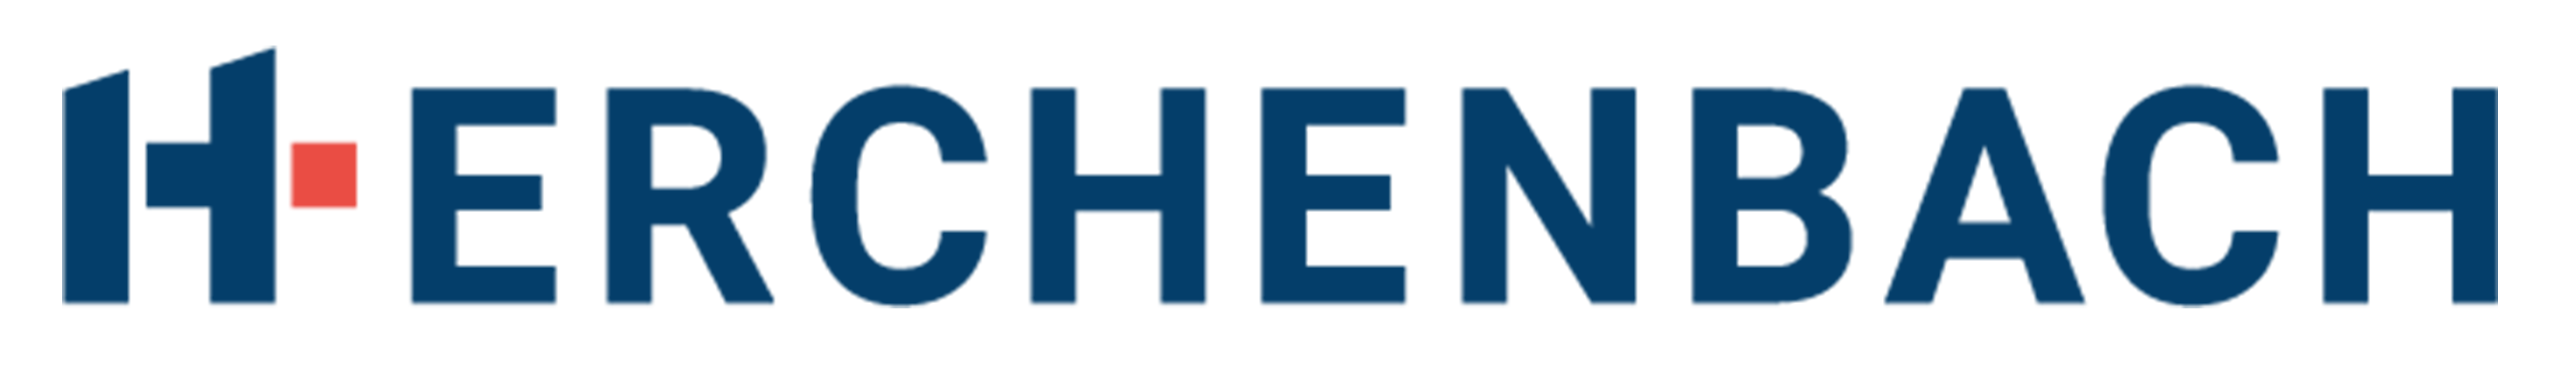 Logo Herchenbach référence MiTi